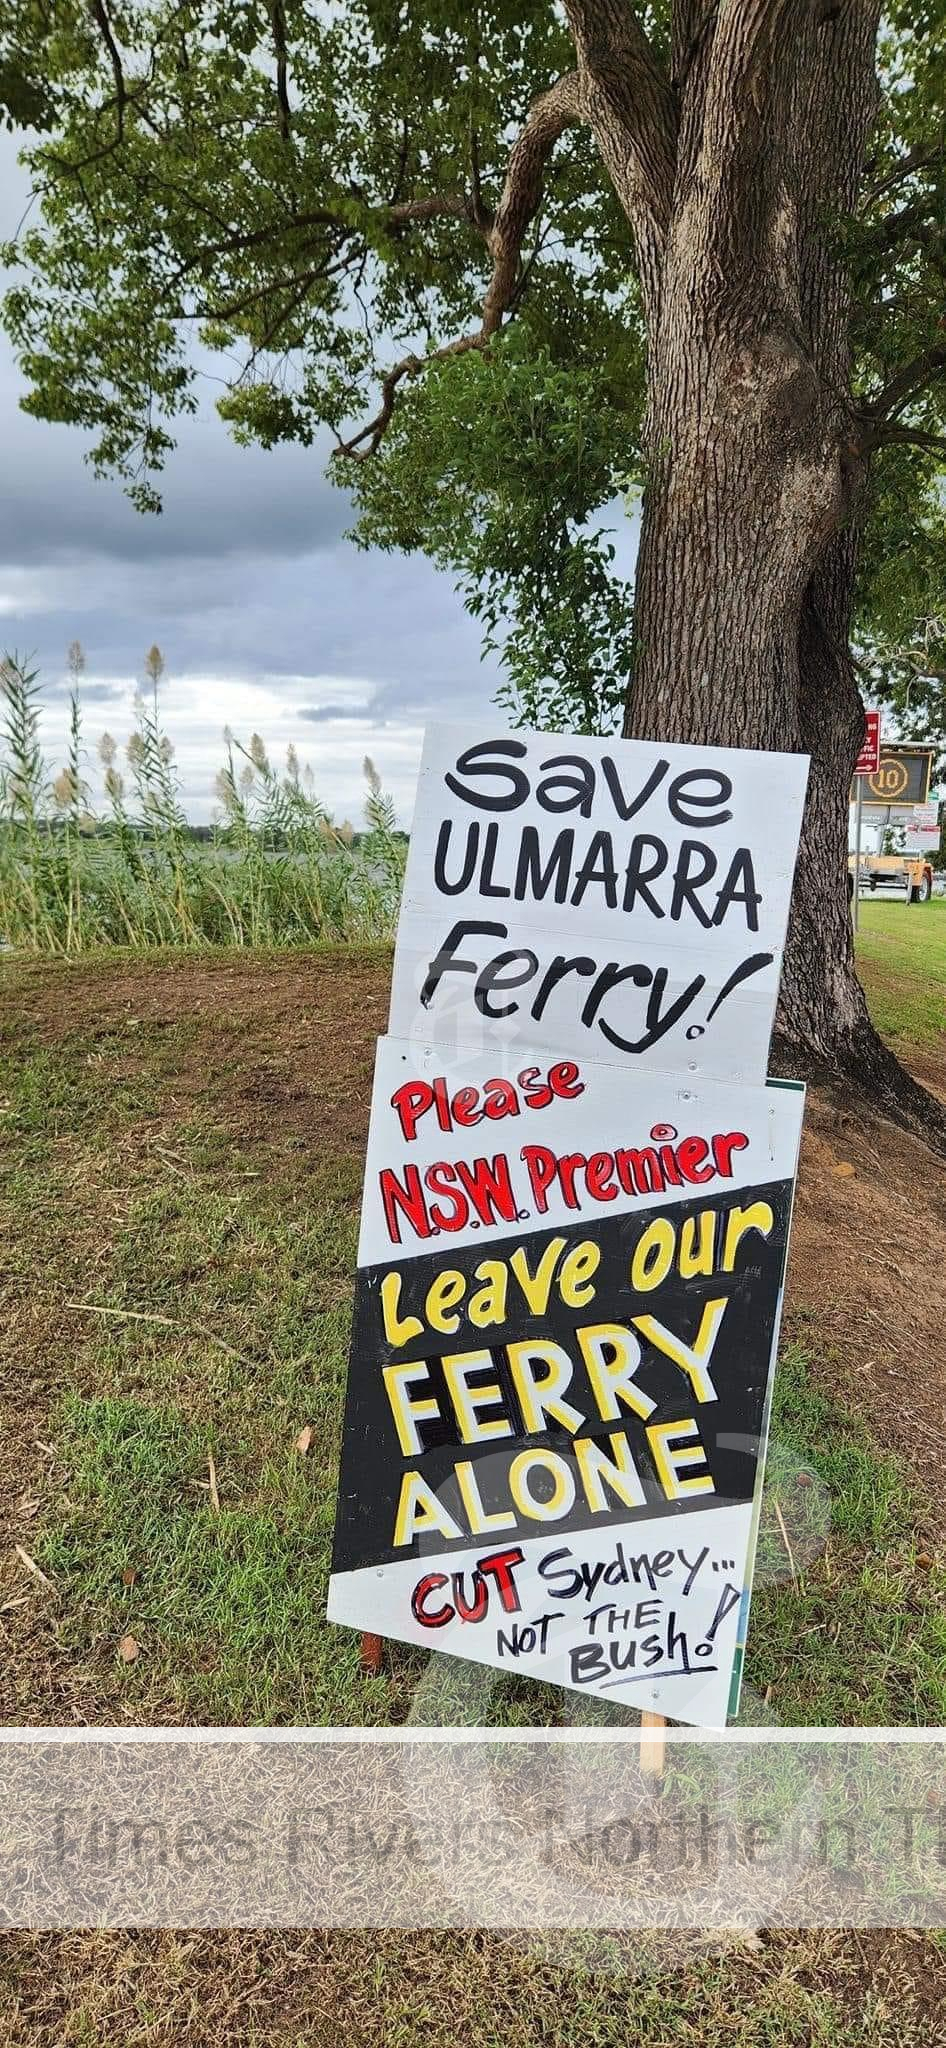 Last ditch bid to save Ulmarra ferry